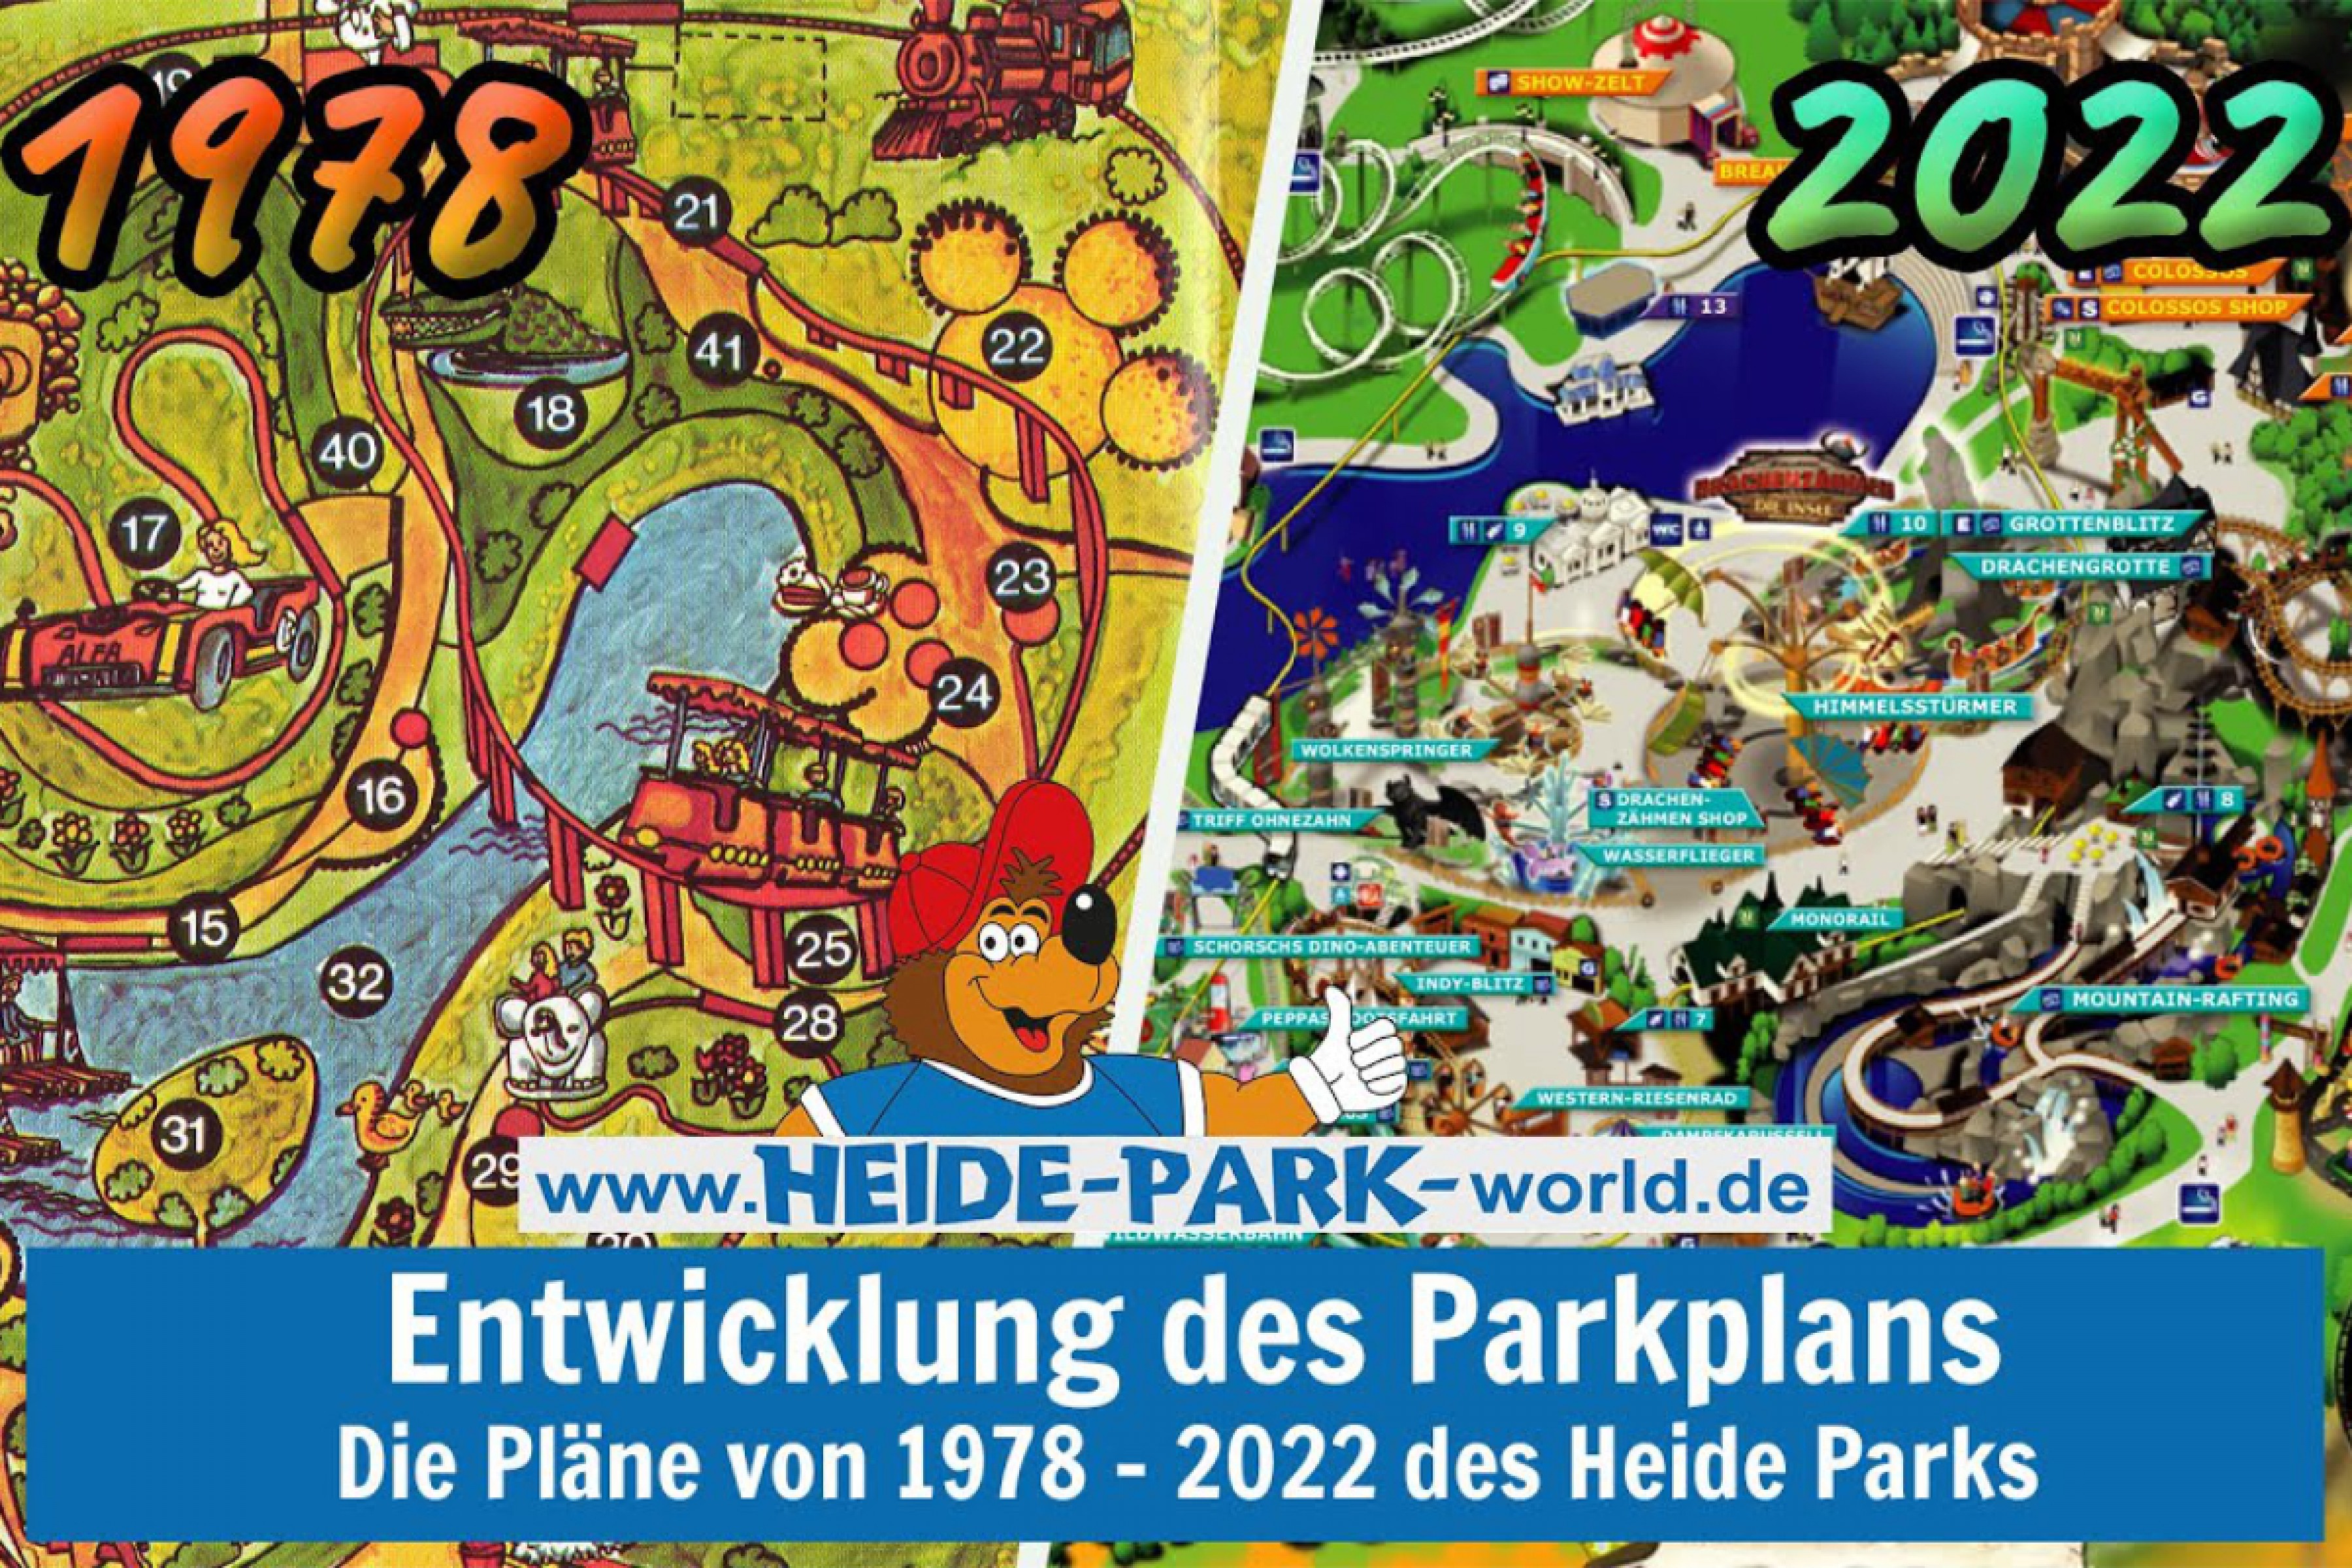 Video: Entwicklung des Heide Park Parkplans von 1978 bis 2022